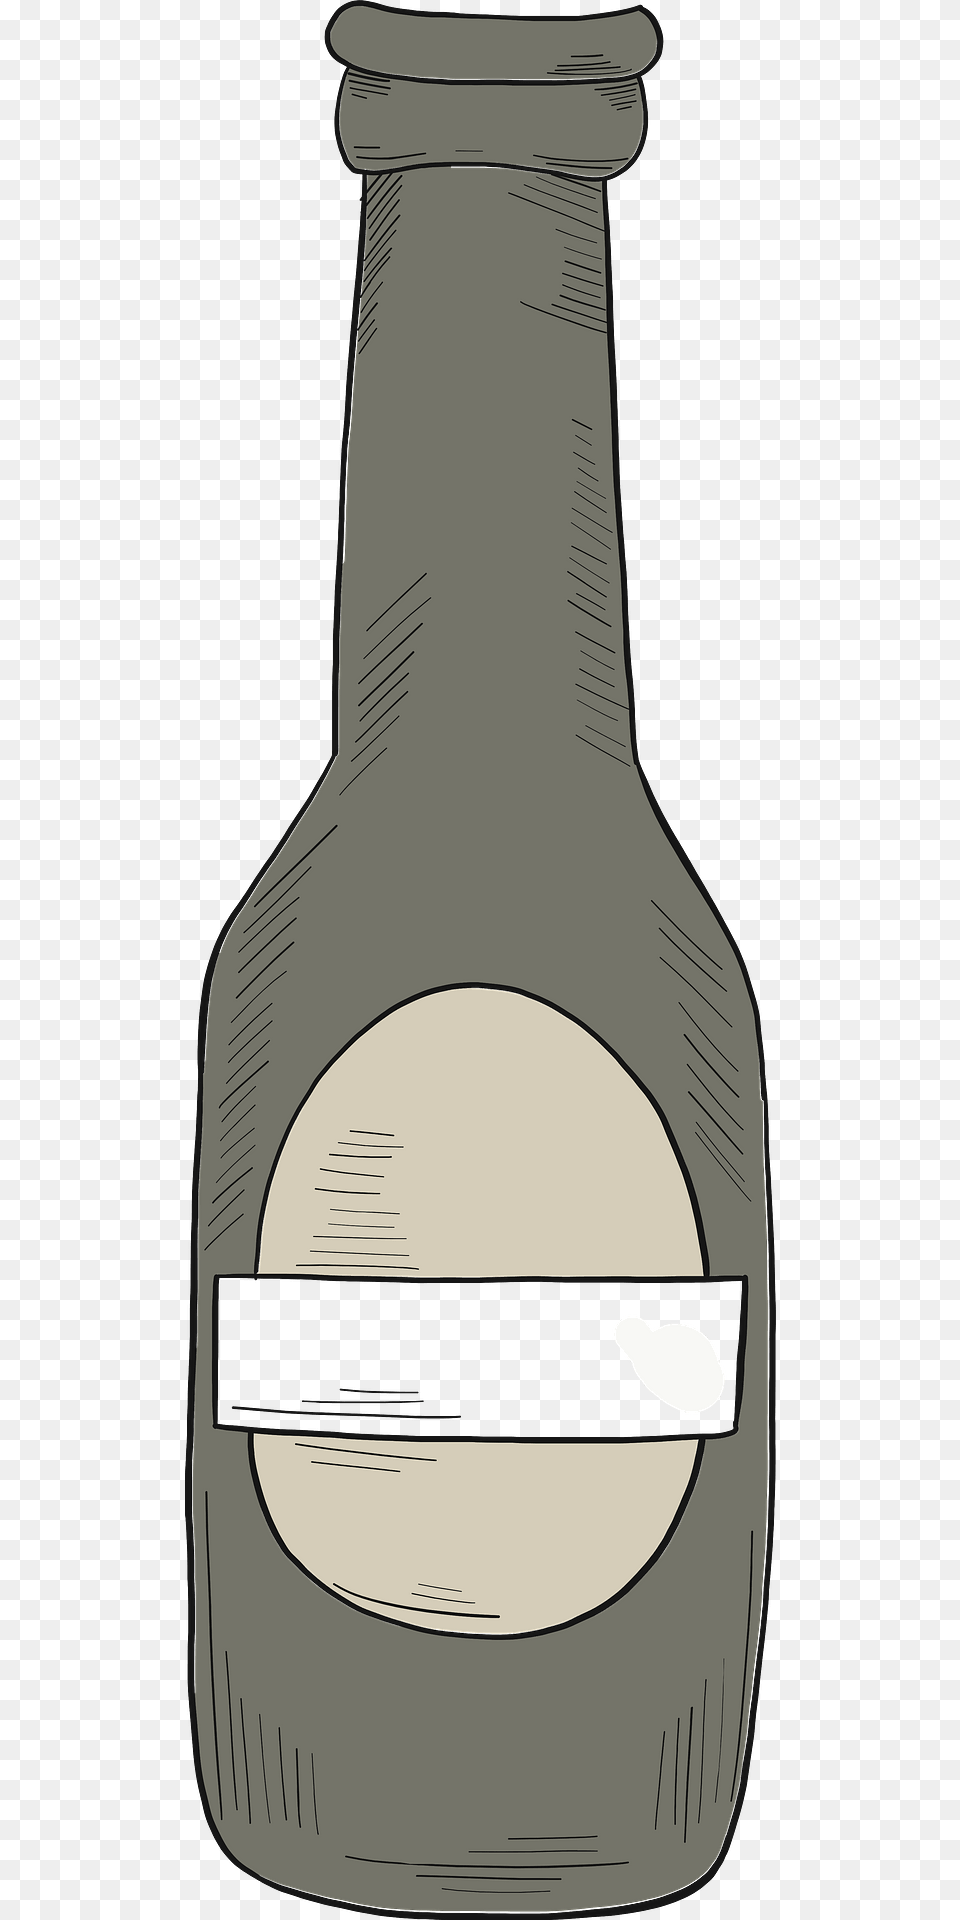 Beer Bottle Clipart, Jar, Cutlery, Ammunition, Grenade Png Image